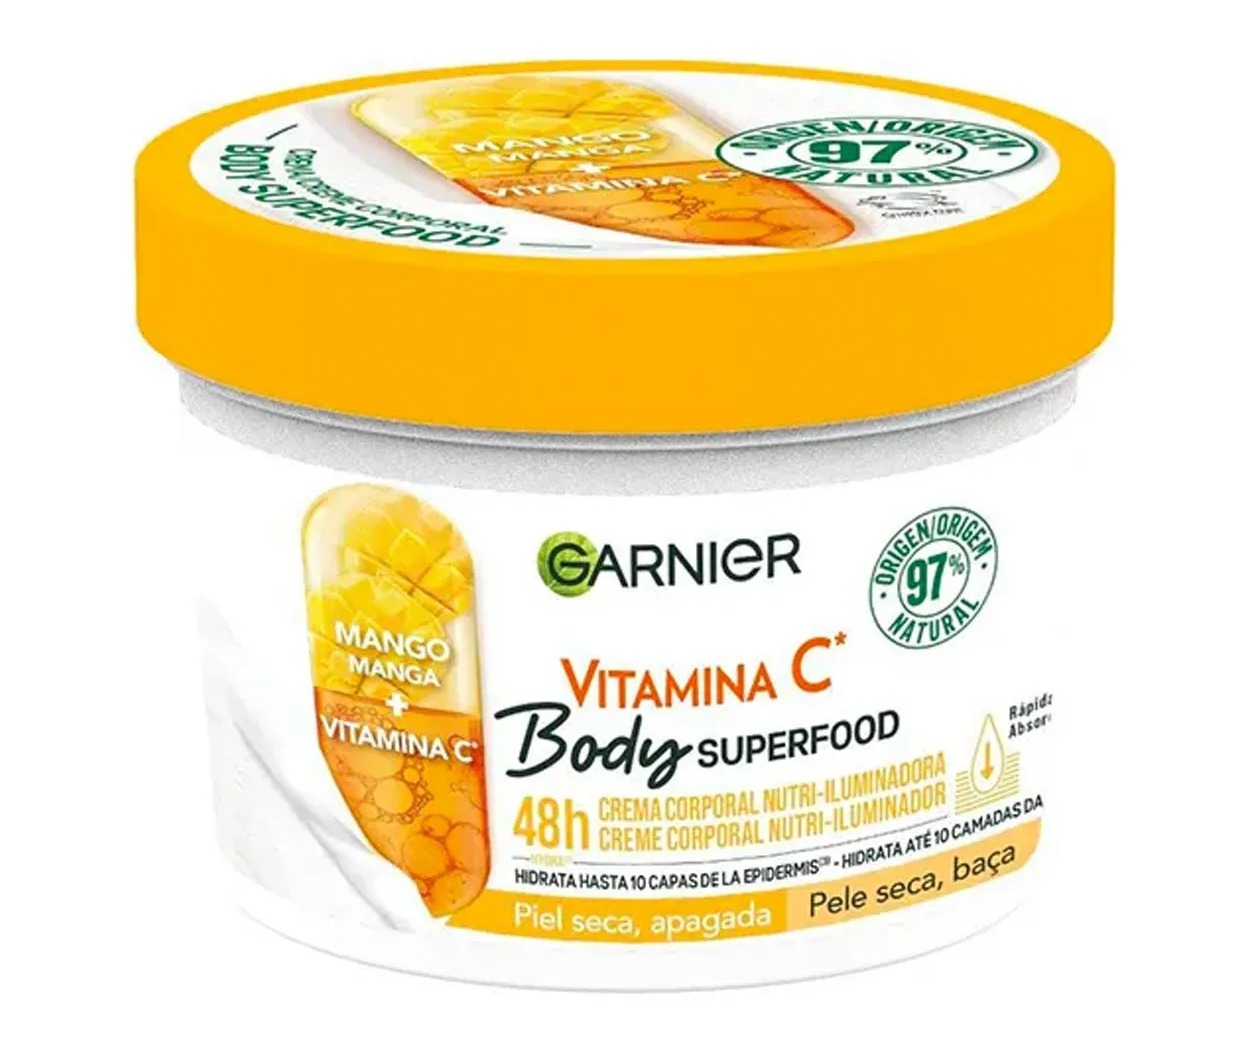 Garnier Vitamin C und Mango Nutri Glow Körpercreme kostet derzeit 4,99 £ bei Boots